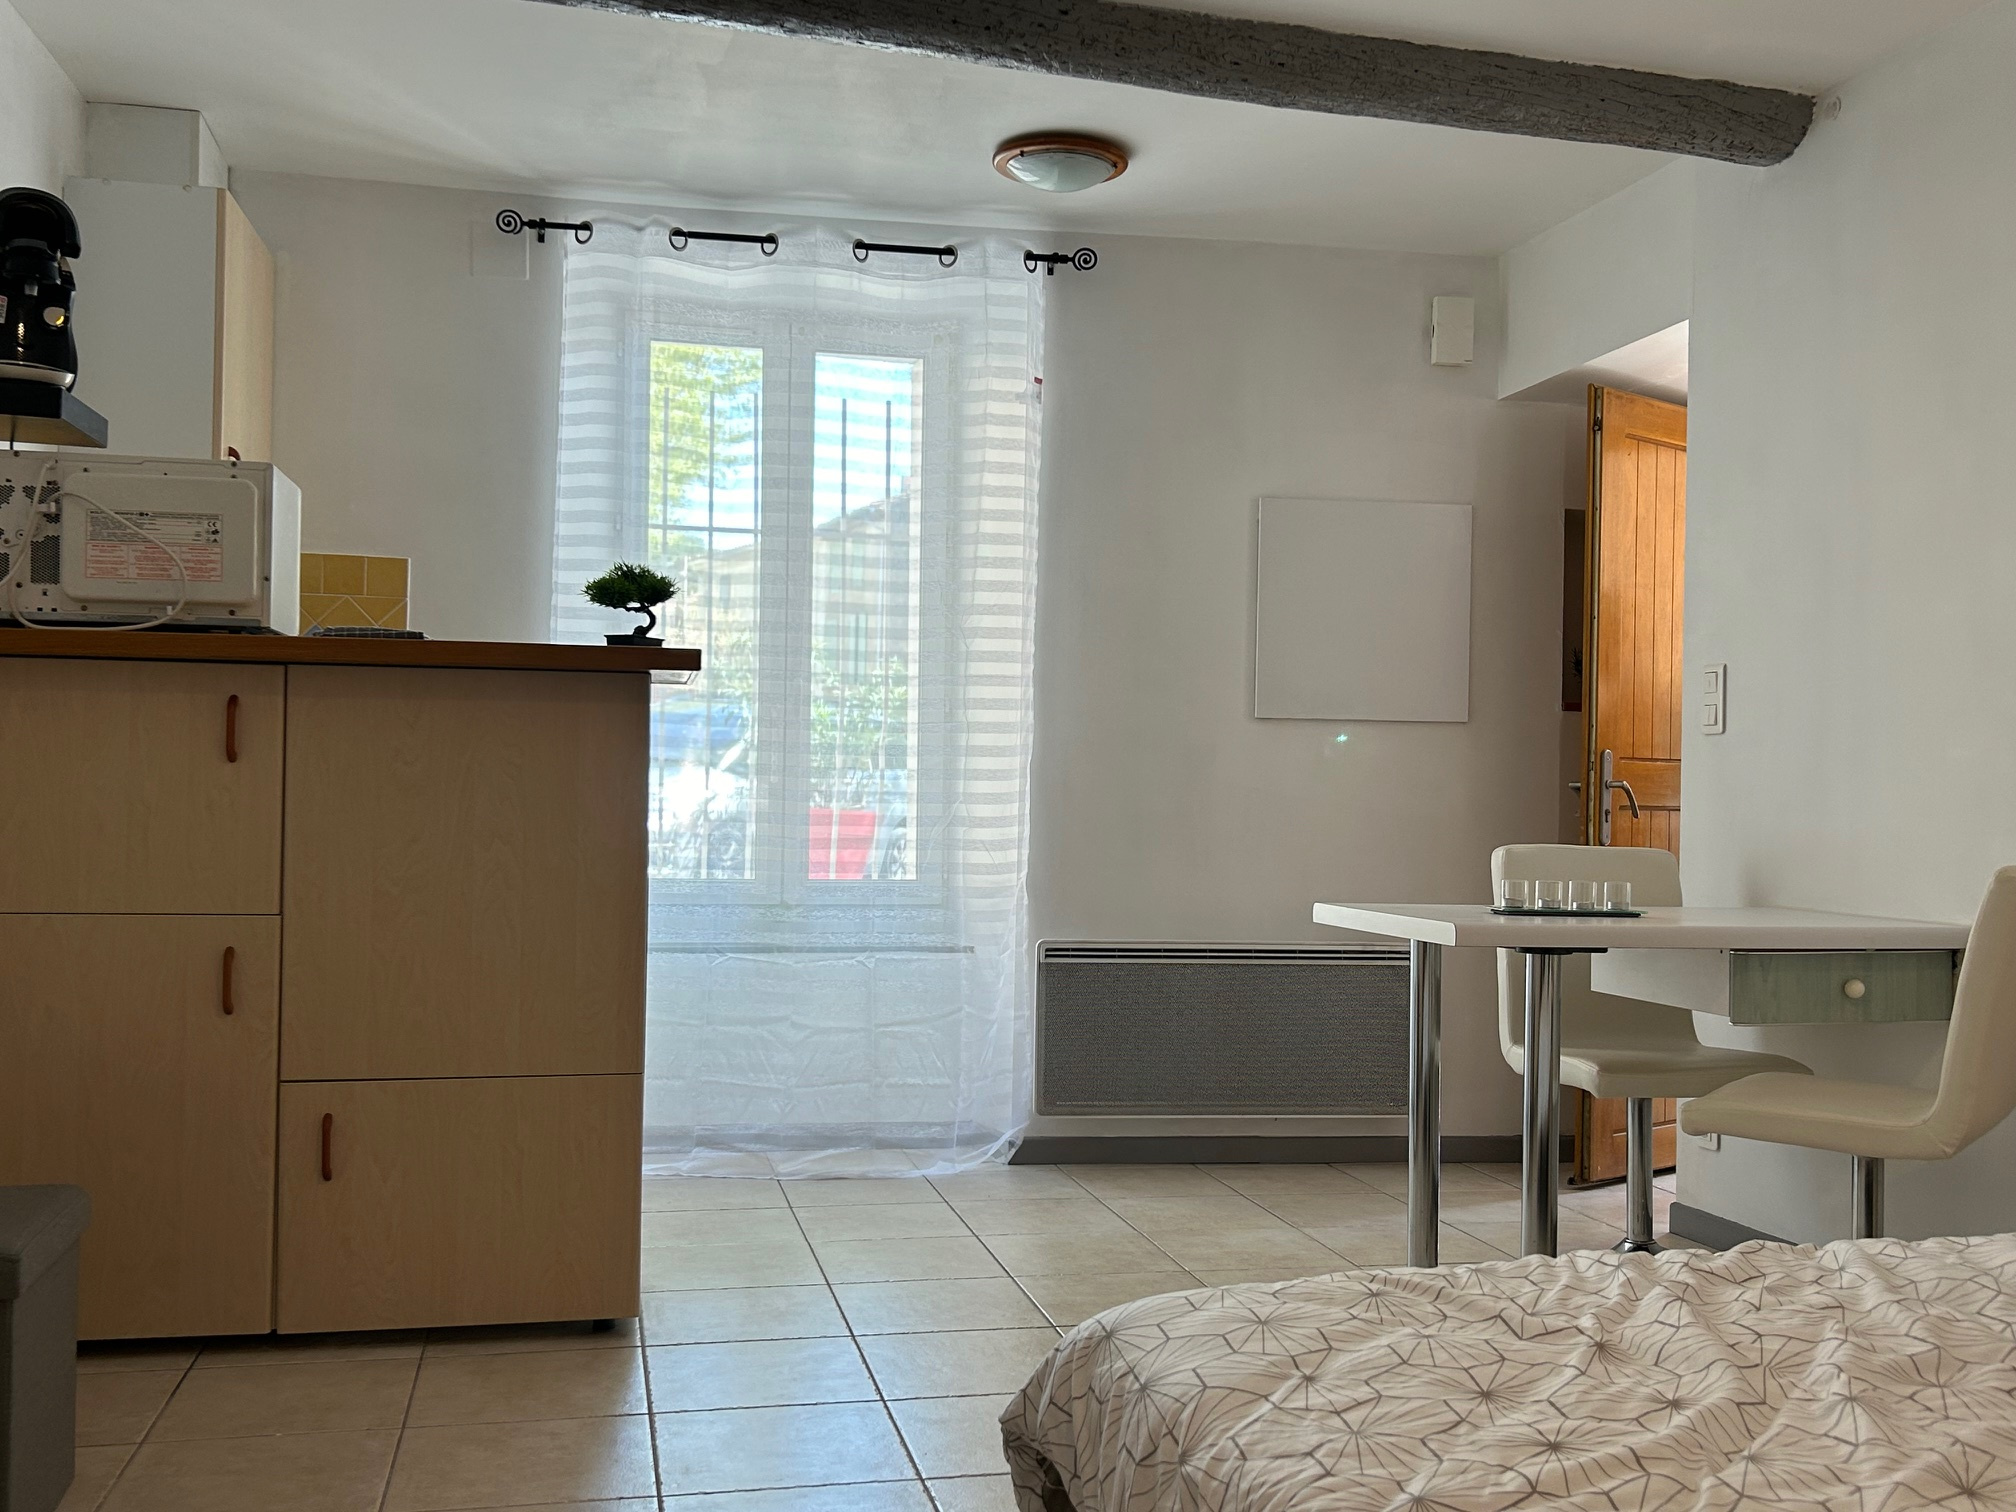 Appartement Local commercial Lézignan-Corbières 900€ Grimois Immobilier